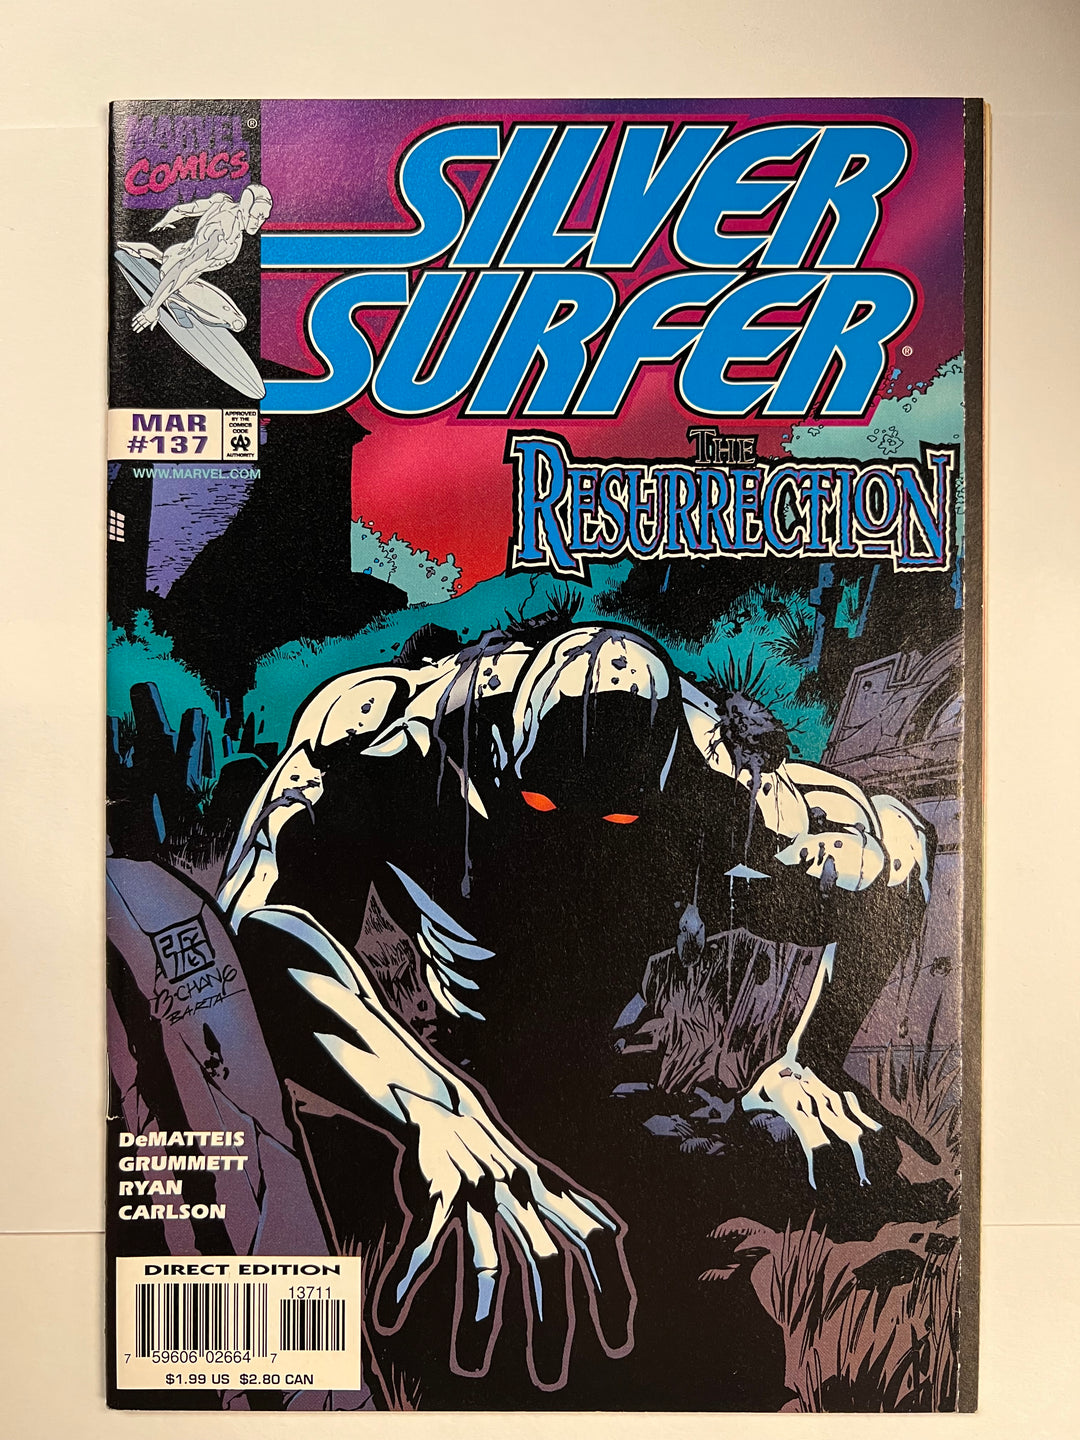 Silver Surfer #137 Marvel 1998 VF-